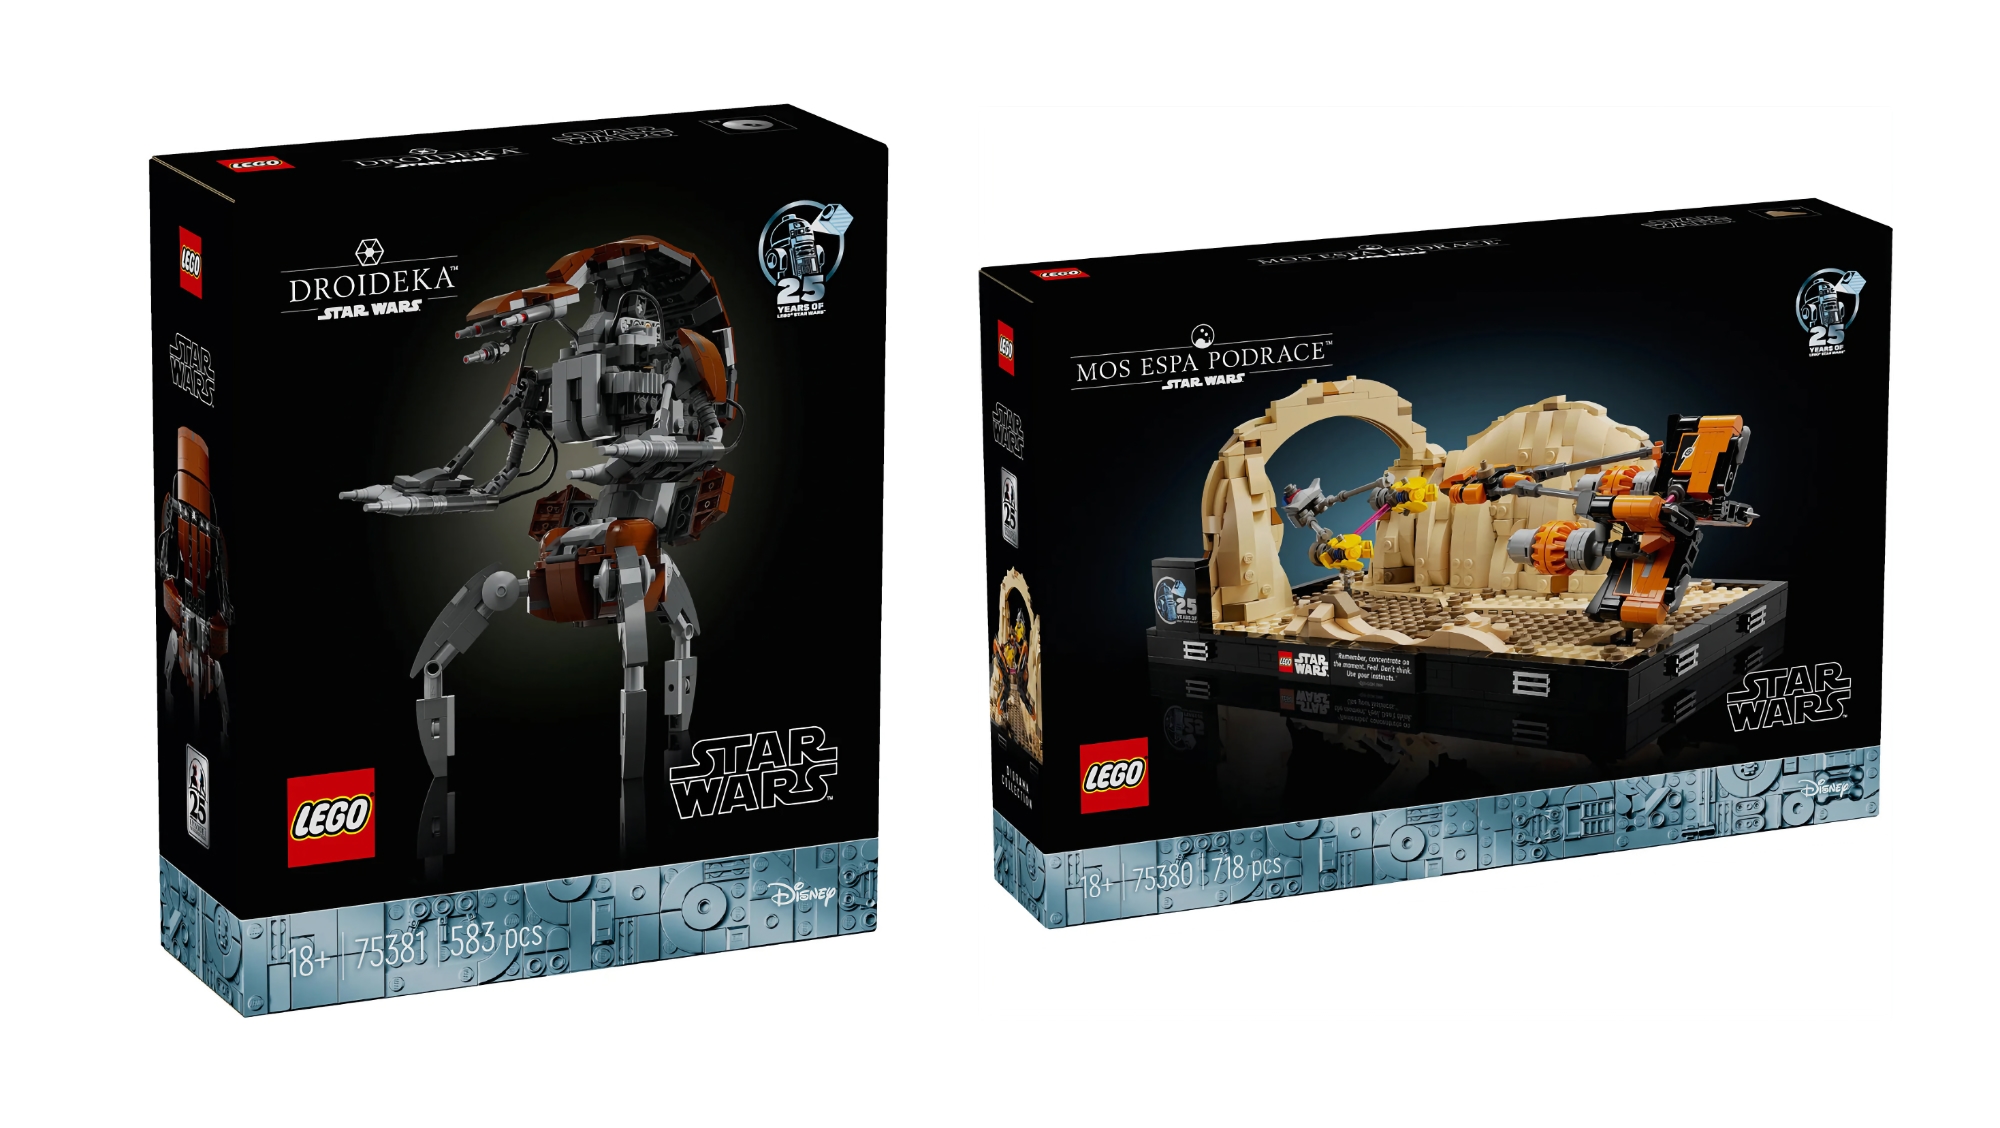 Mos espa Podrace och Droideka: LEGO släpper två nya set för Star Wars-fans i maj